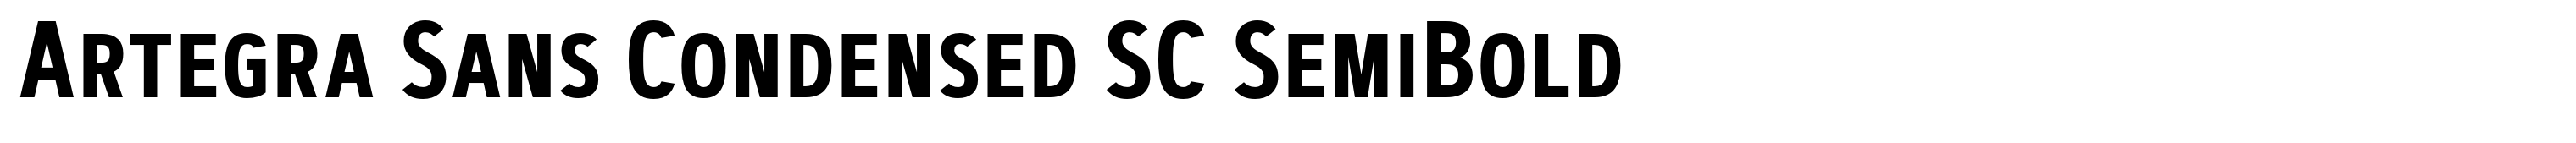 Artegra Sans Condensed SC SemiBold